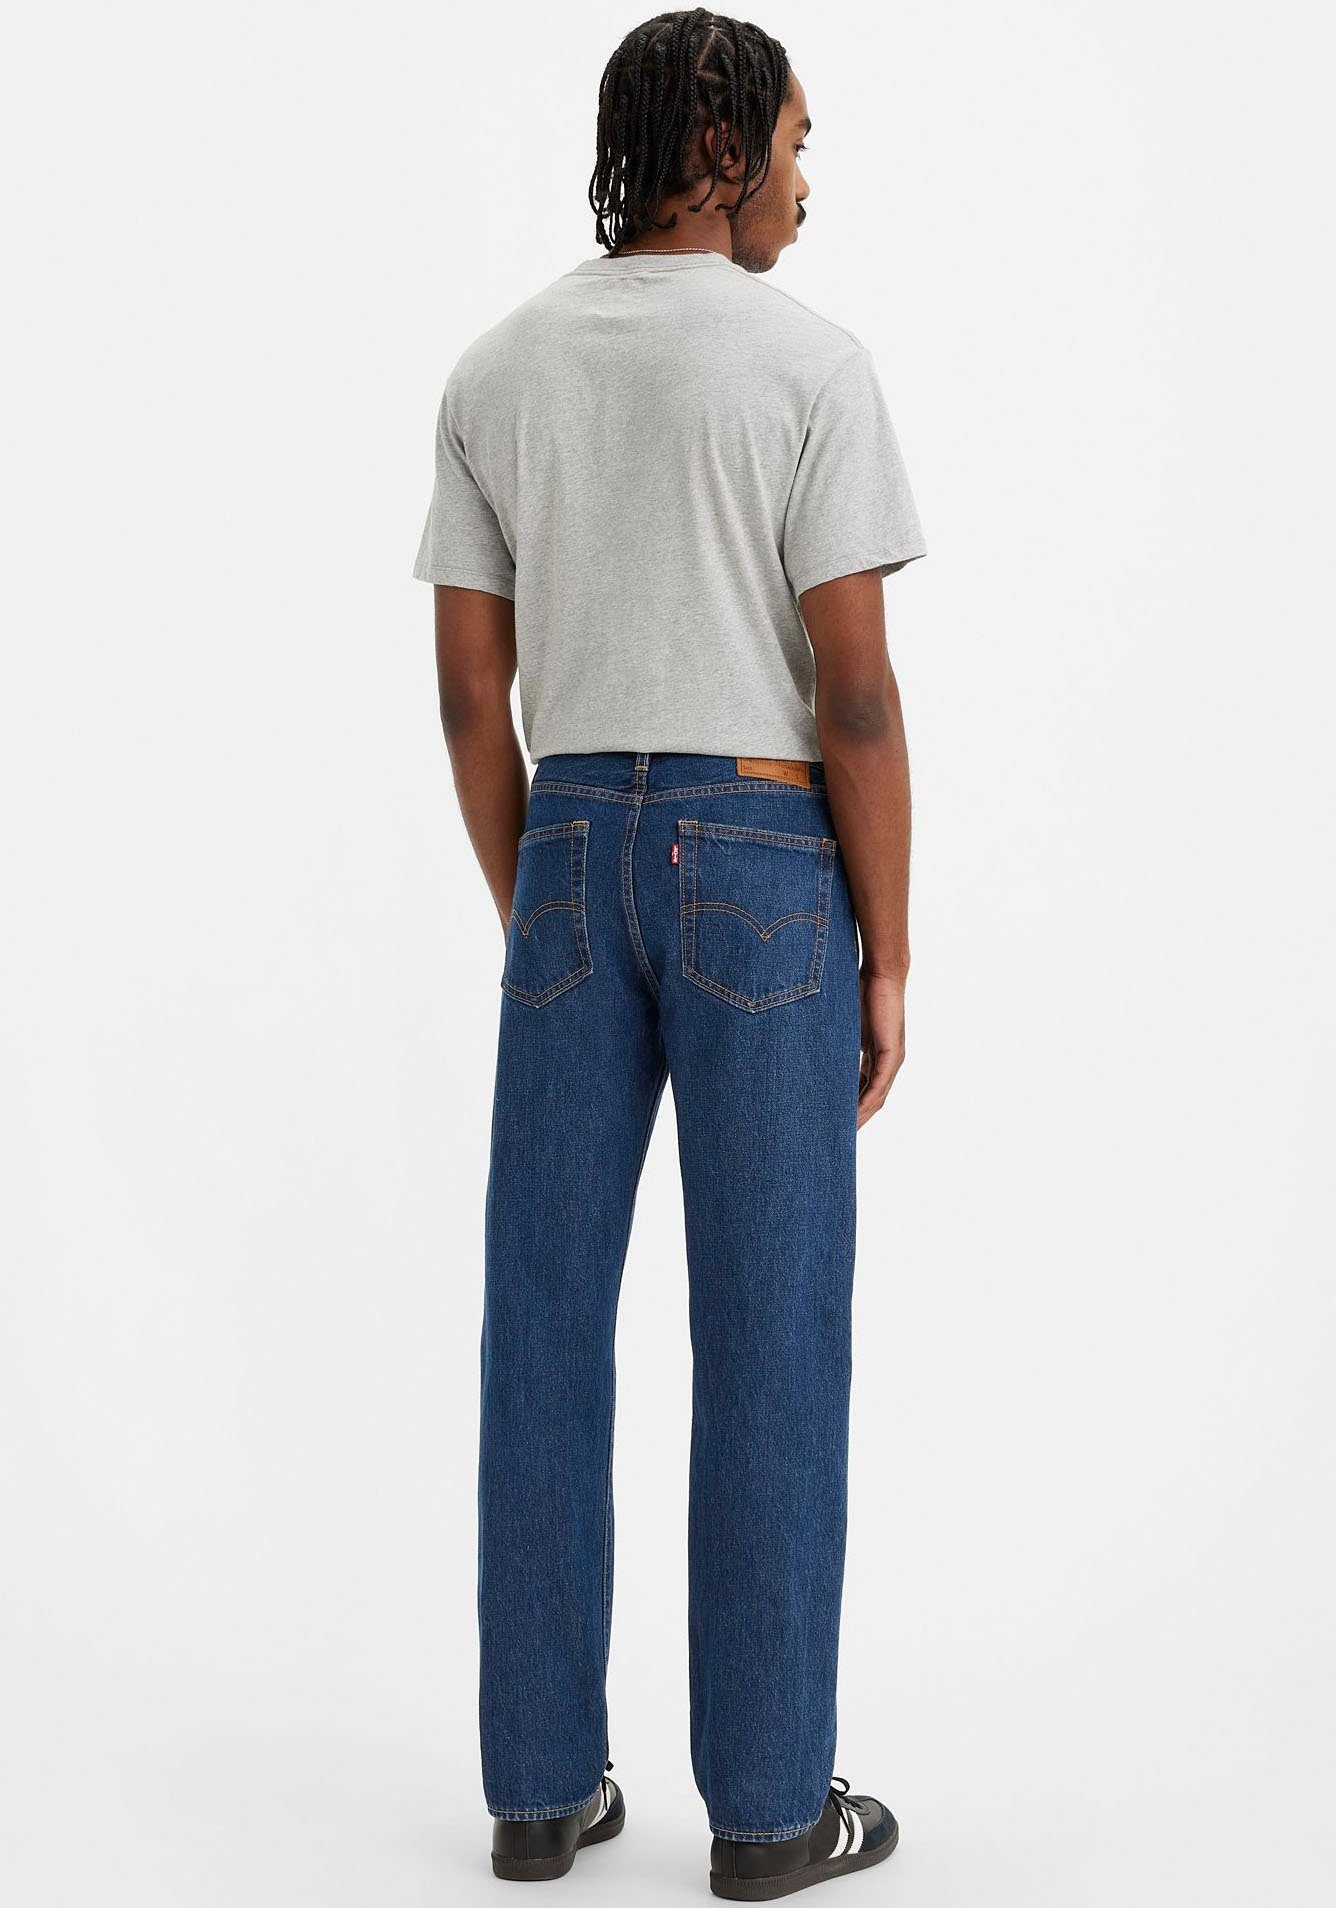 AUTHENTIC dreams Levi's® vivid mit Lederbadge 551Z Straight-Jeans